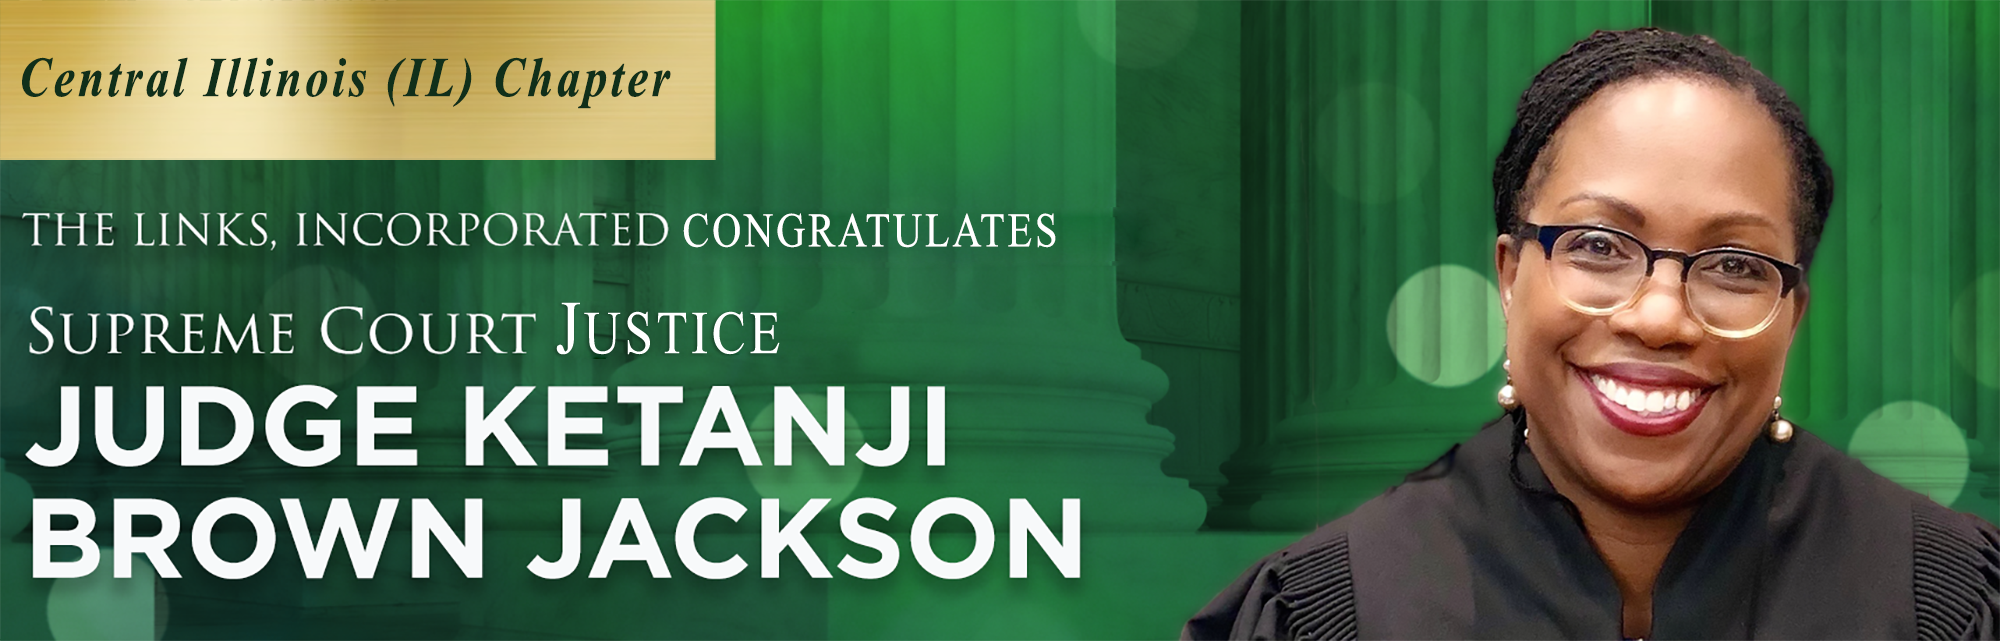 U.S. Supreme Court Justice Judge Ketanji Brown Jackson